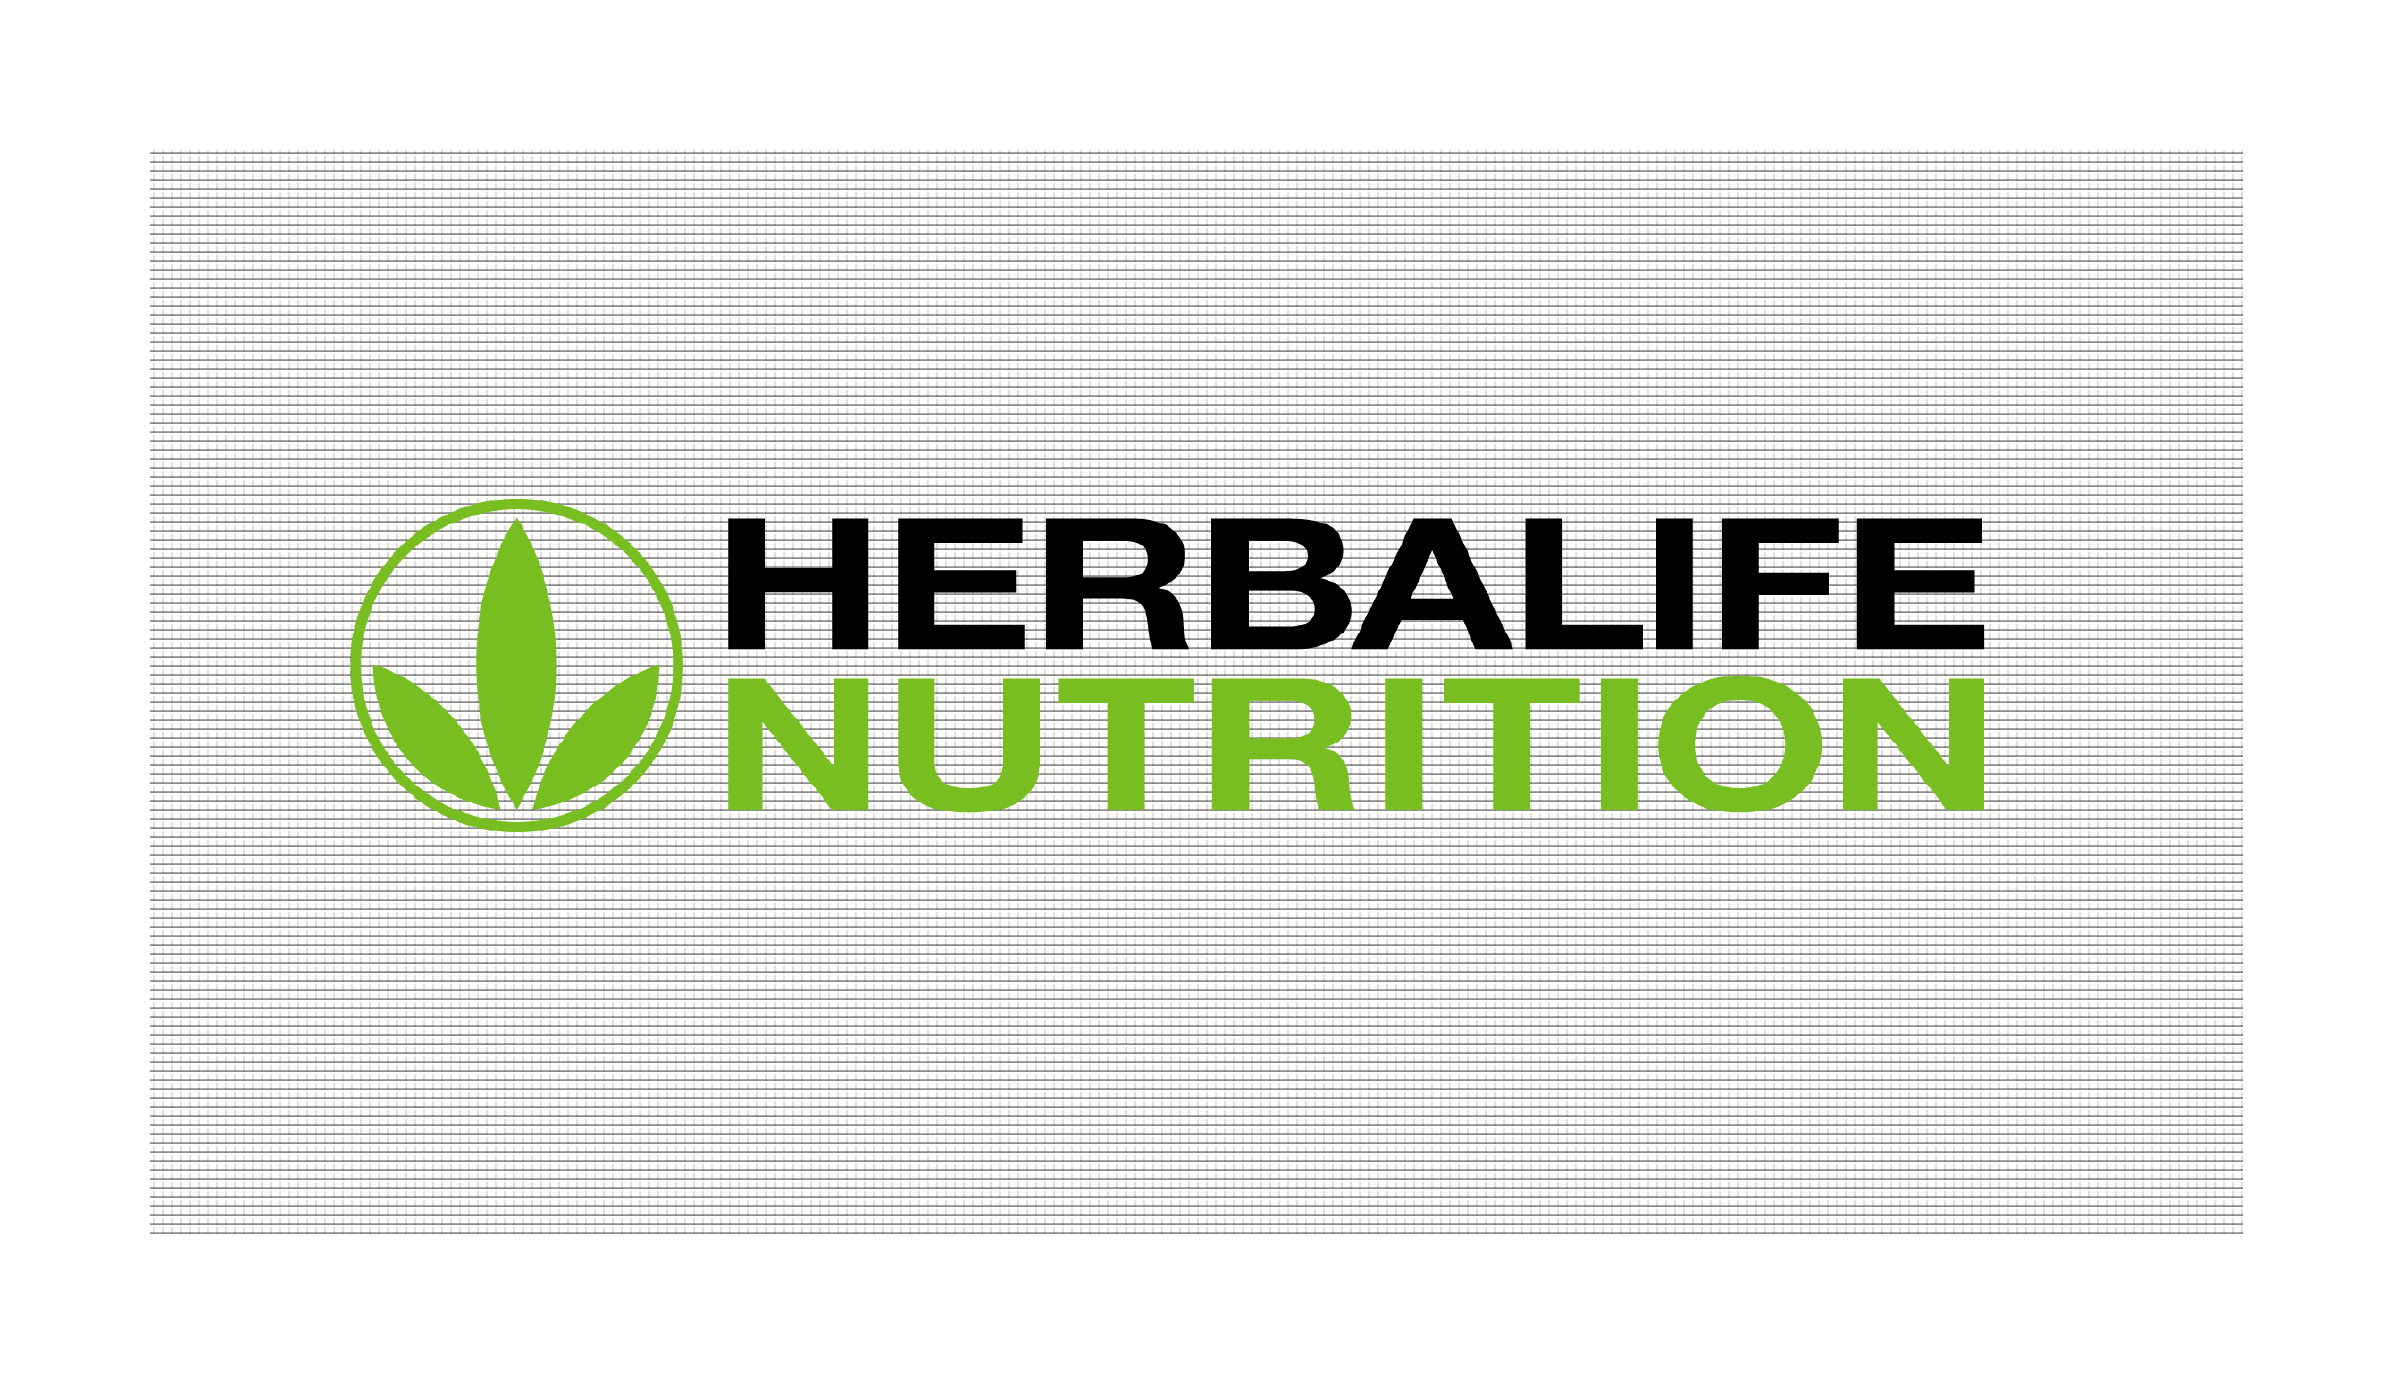 Арендатор ДЦ«СИТИДЕЛ» – компания Herbalife Nutrition, открывает Центр продаж 